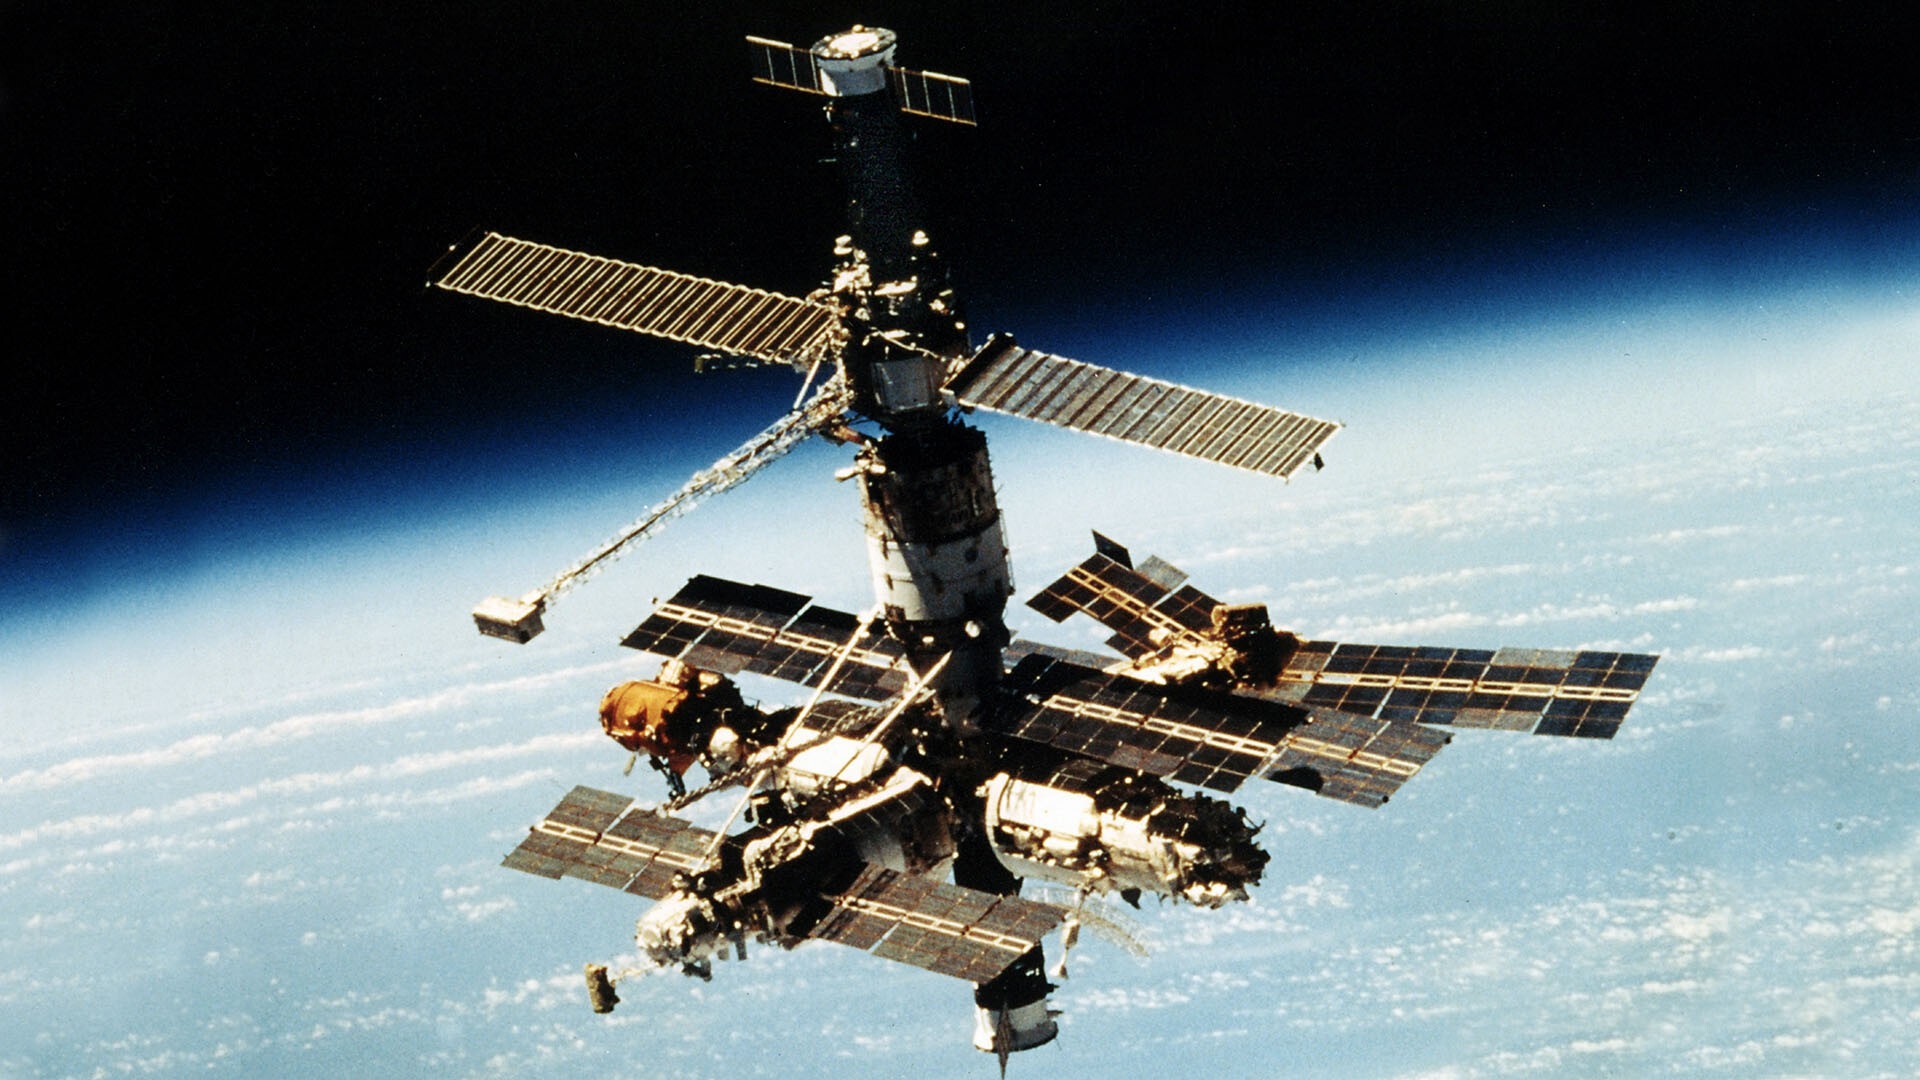 Советская станция в космосе. Станция мир 1986. Орбитальная Космическая станция мир 1986. 1986 Запущена Советская орбитальная станция «мир». Космическая станция «мир» (20.02.1986-16.03.2001).